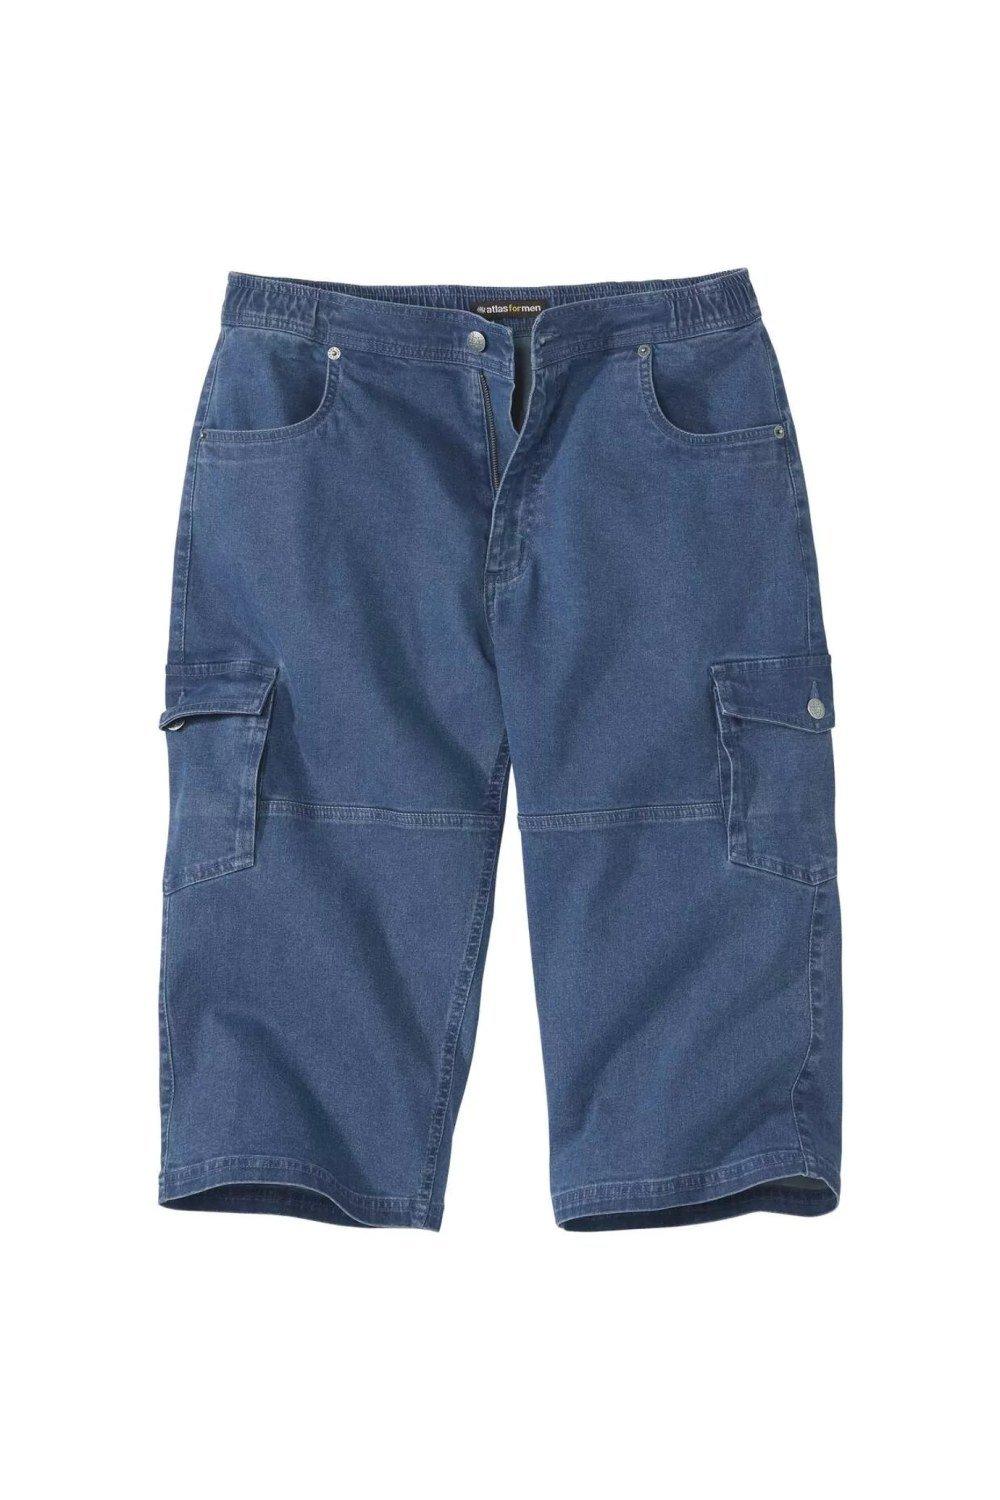 Джинсовые укороченные брюки карго Atlas for Men, синий